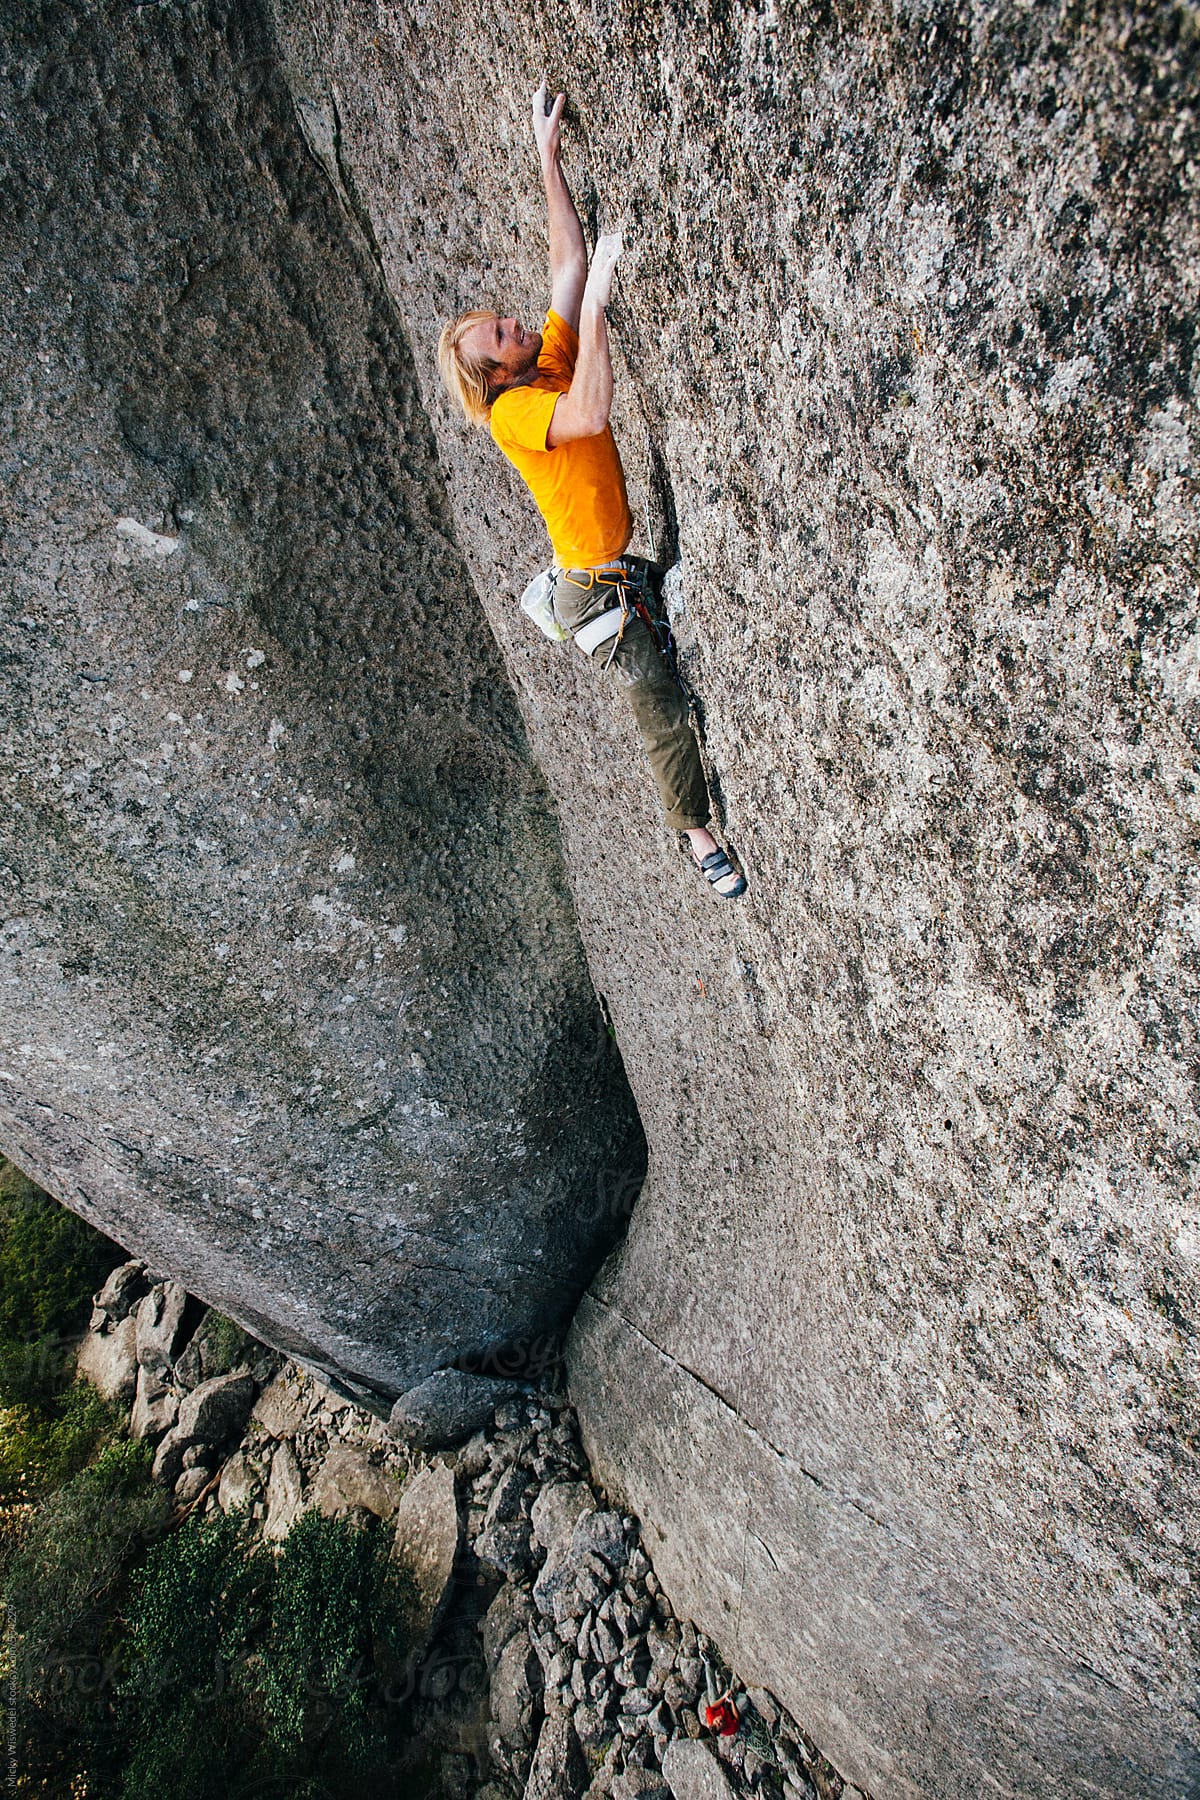 Rock climber climbing an extreme cliff in a mountain